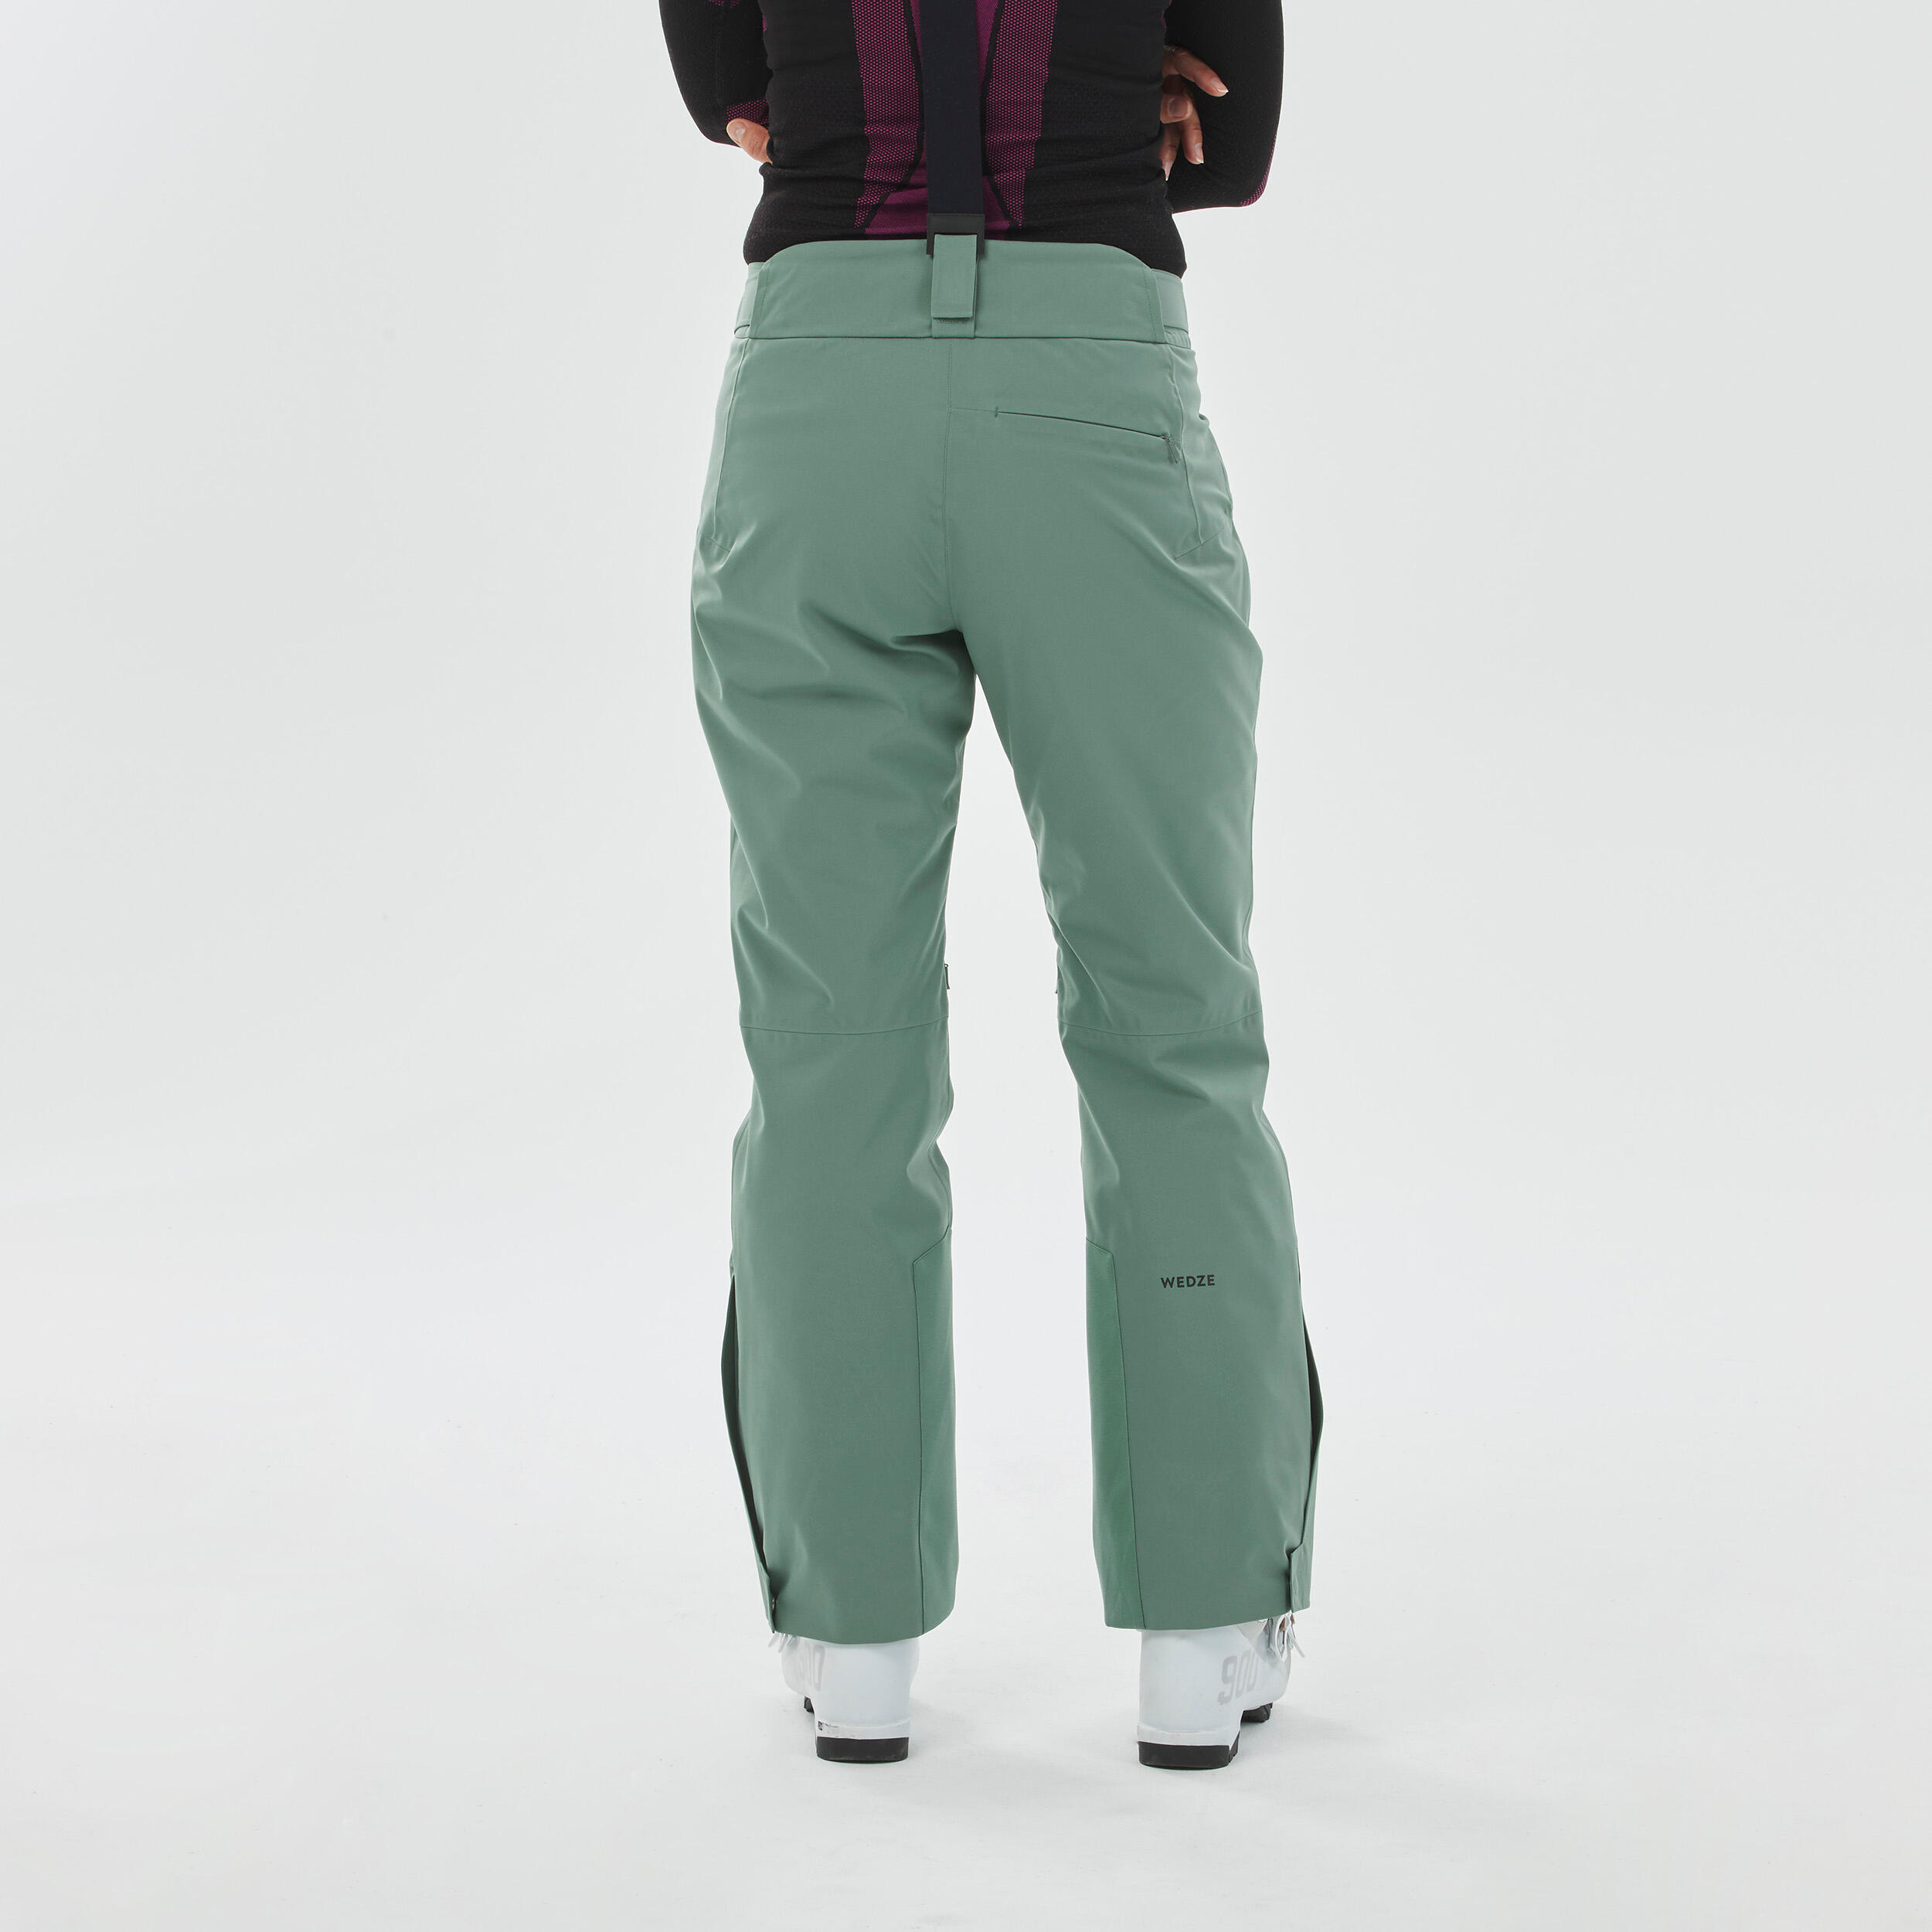 Women's Downhill Ski Pants - 580 Green - Laurel green - Wedze